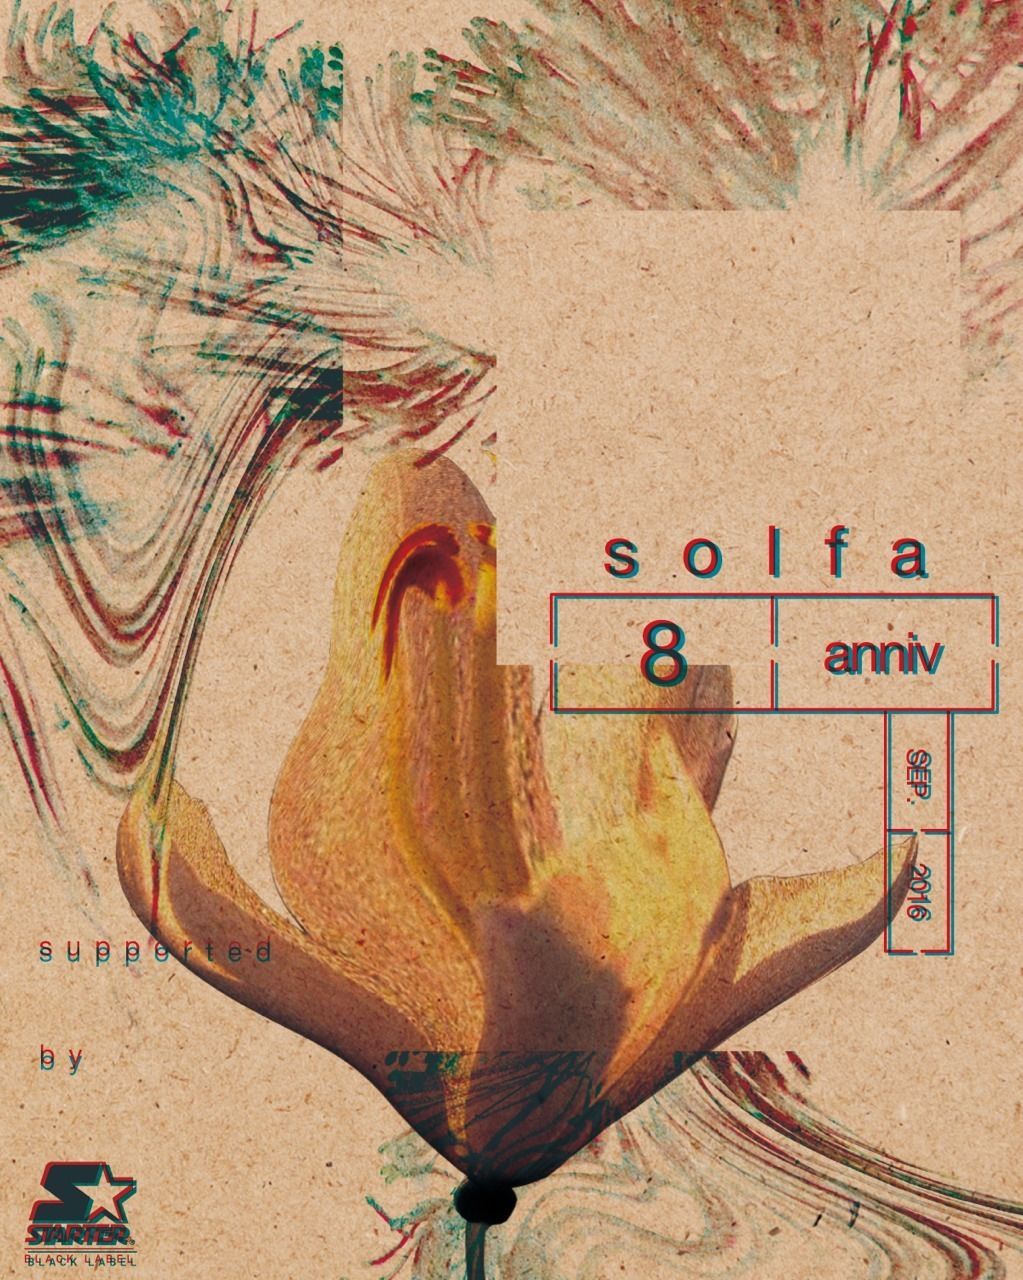 solfaが8周年。4日間のアニバーサリーパーティーを開催